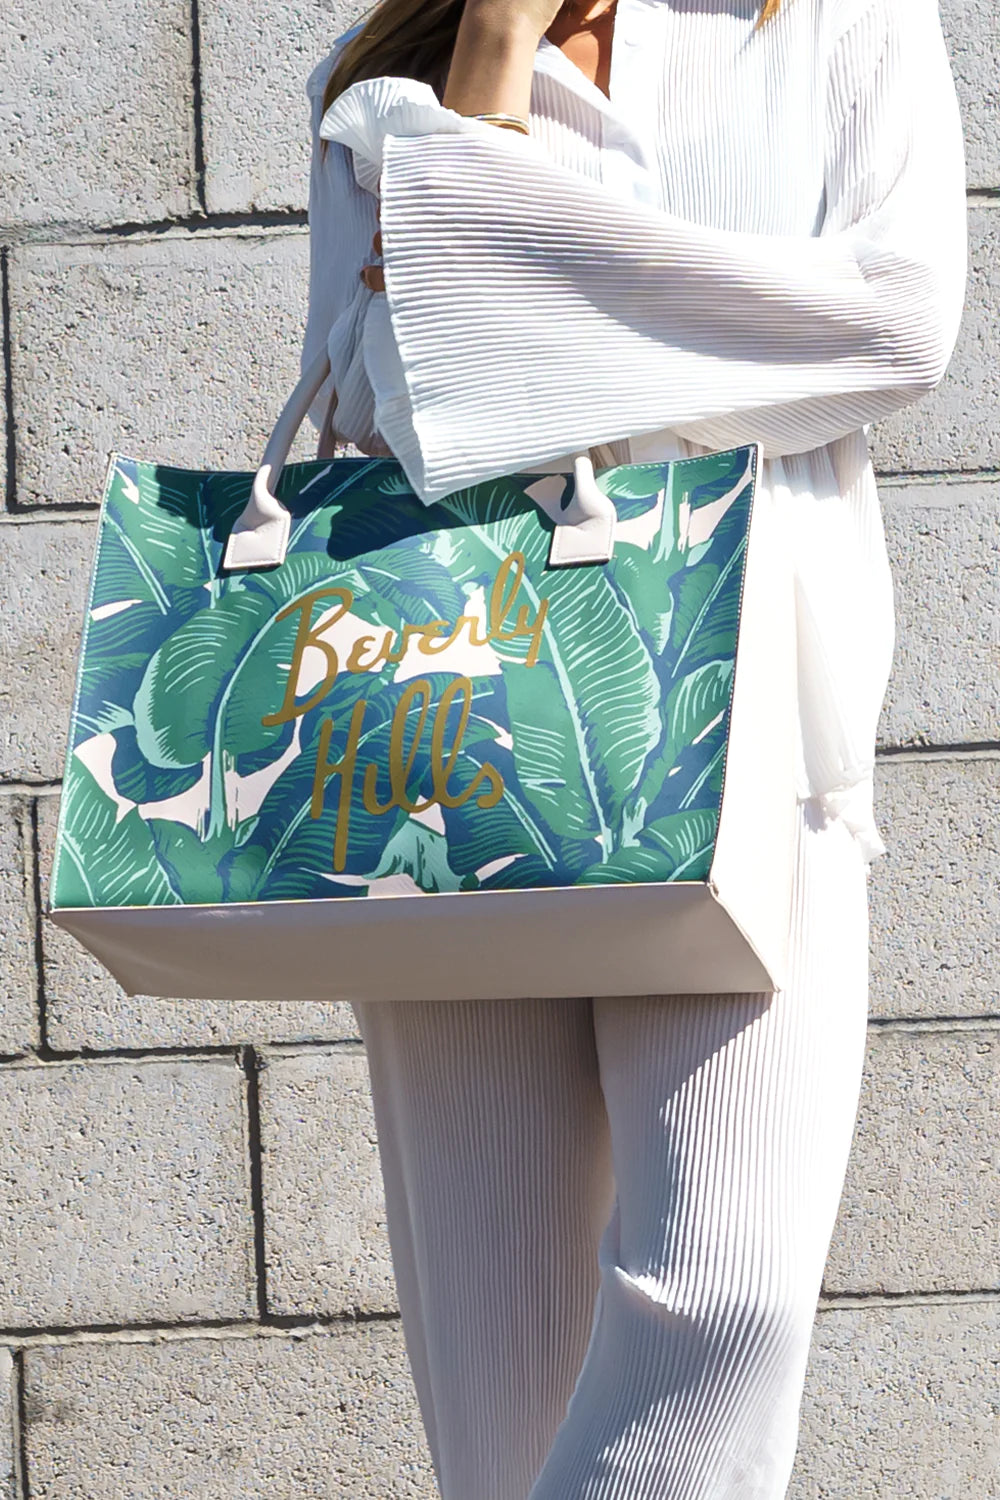 Beverly Hills Leaf Tote Bag (White/Green Leaf)